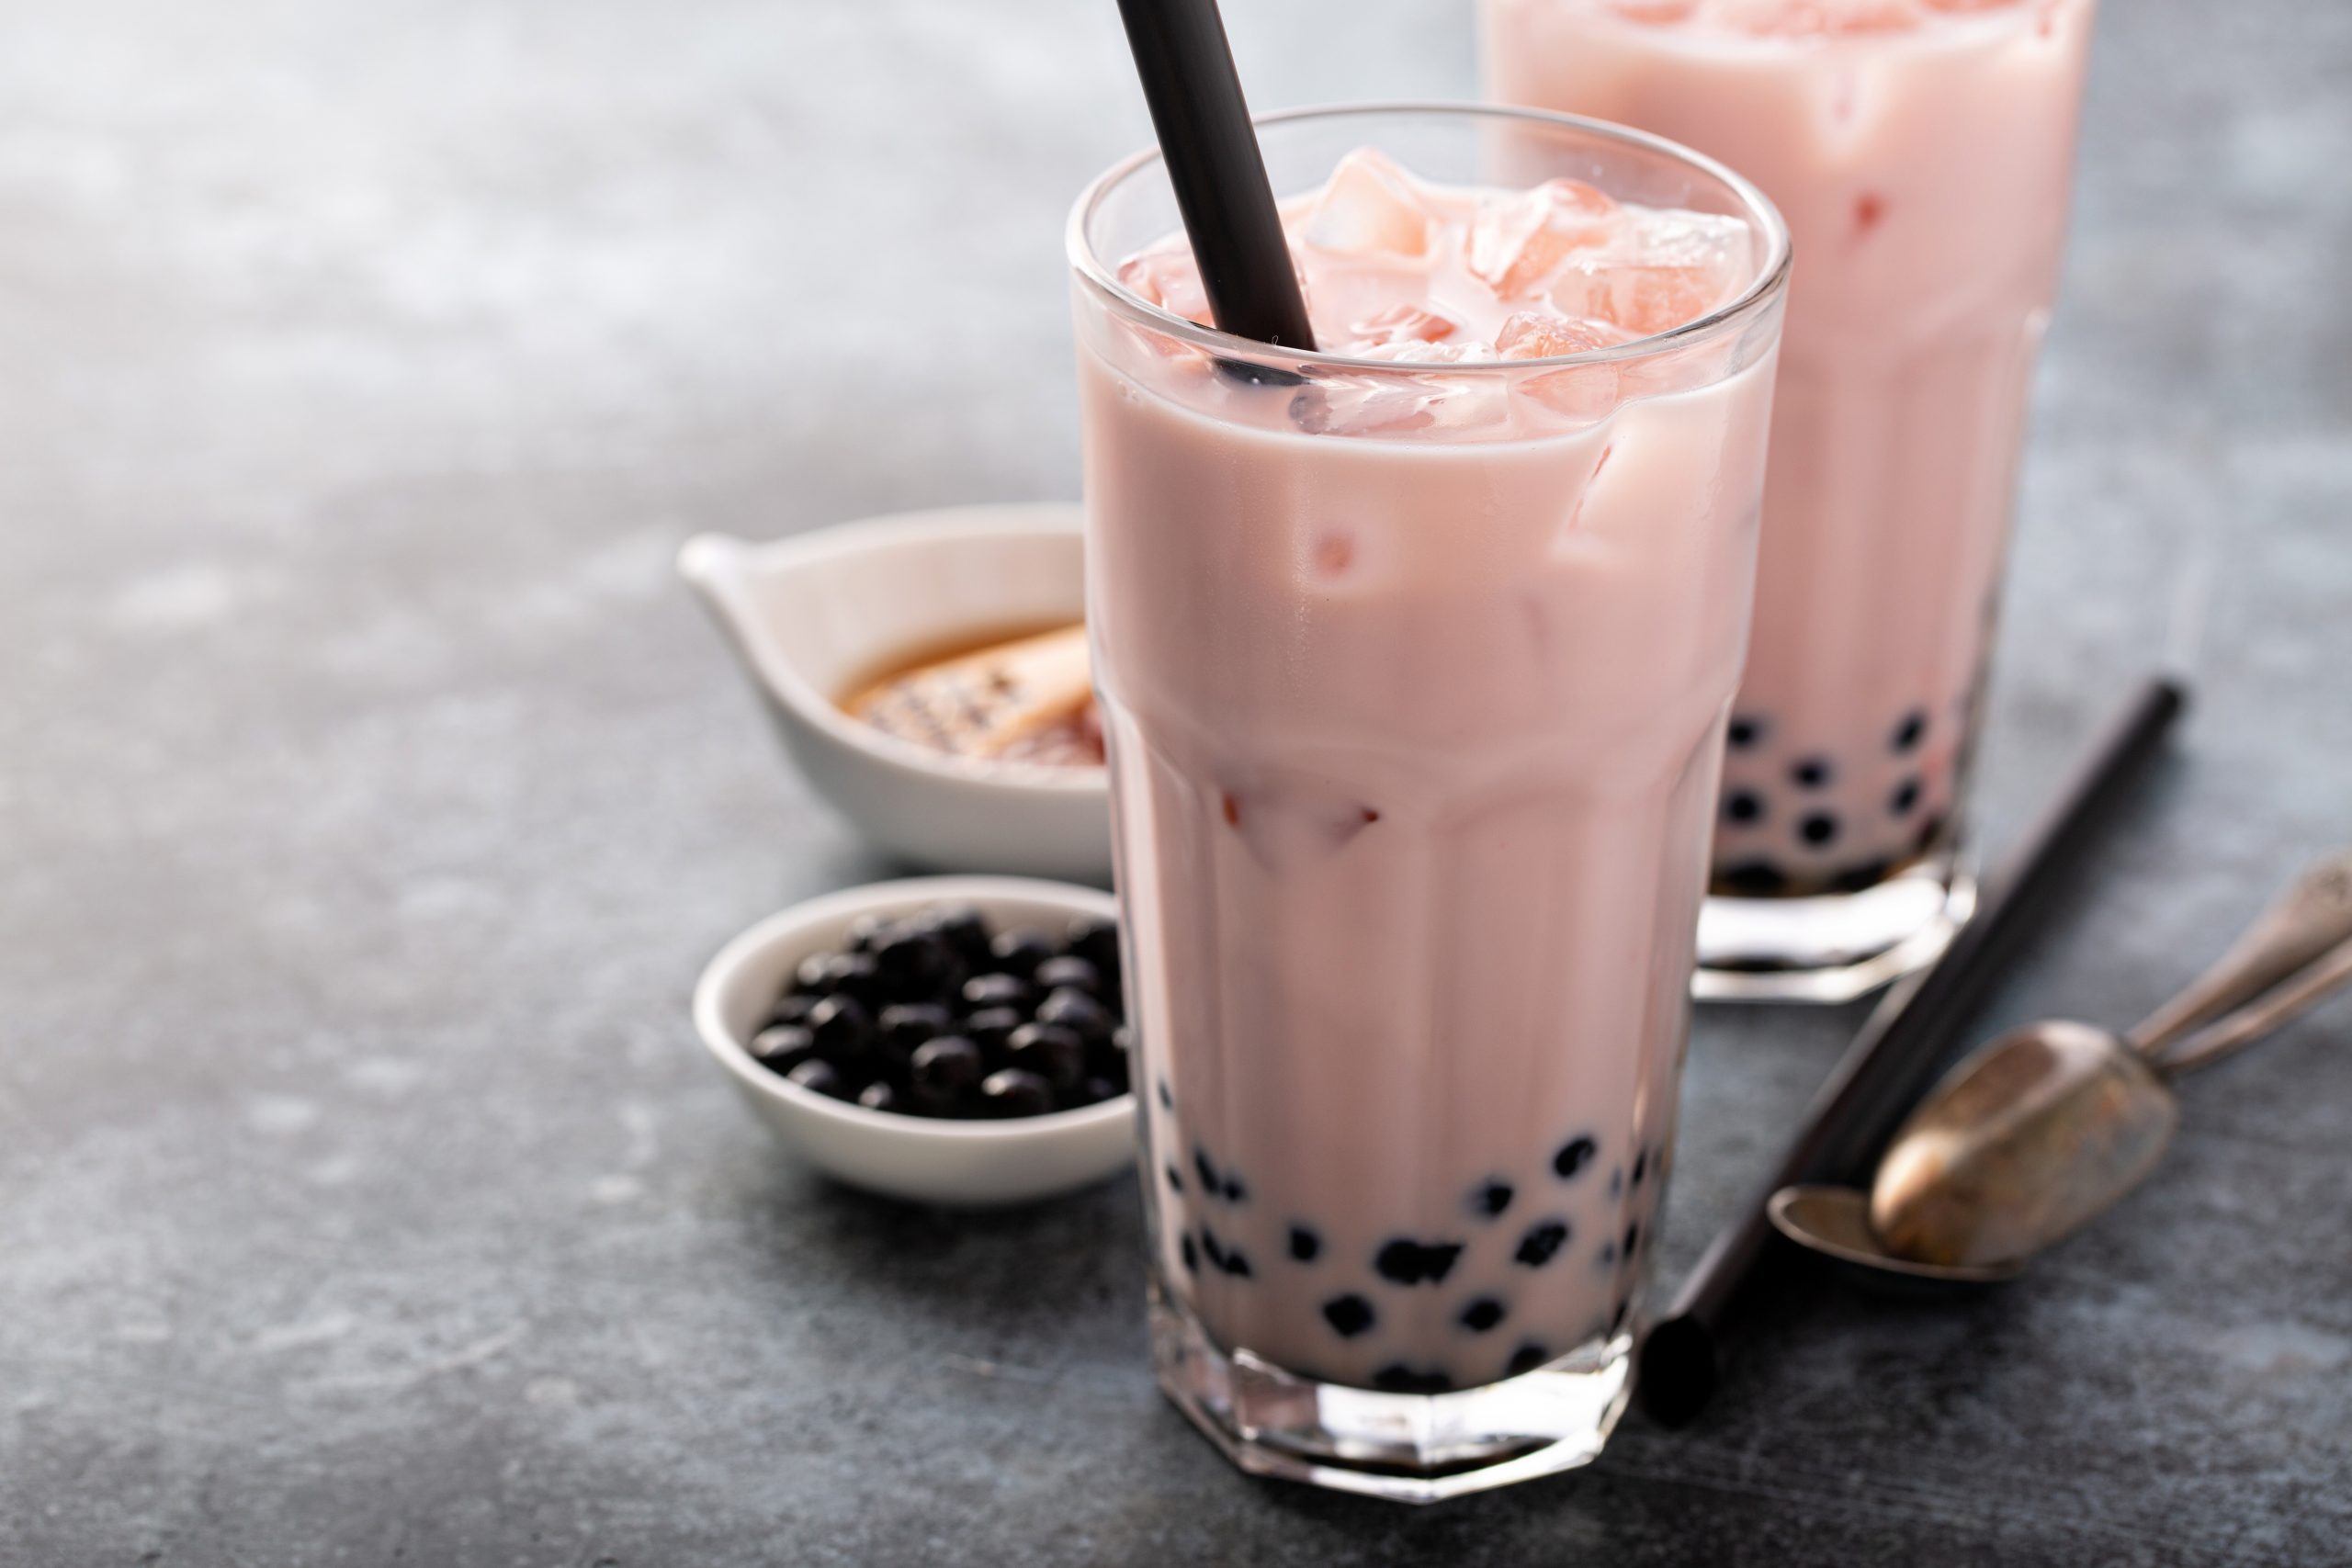 strawberry collagen bubble milk tea recipe - healthy